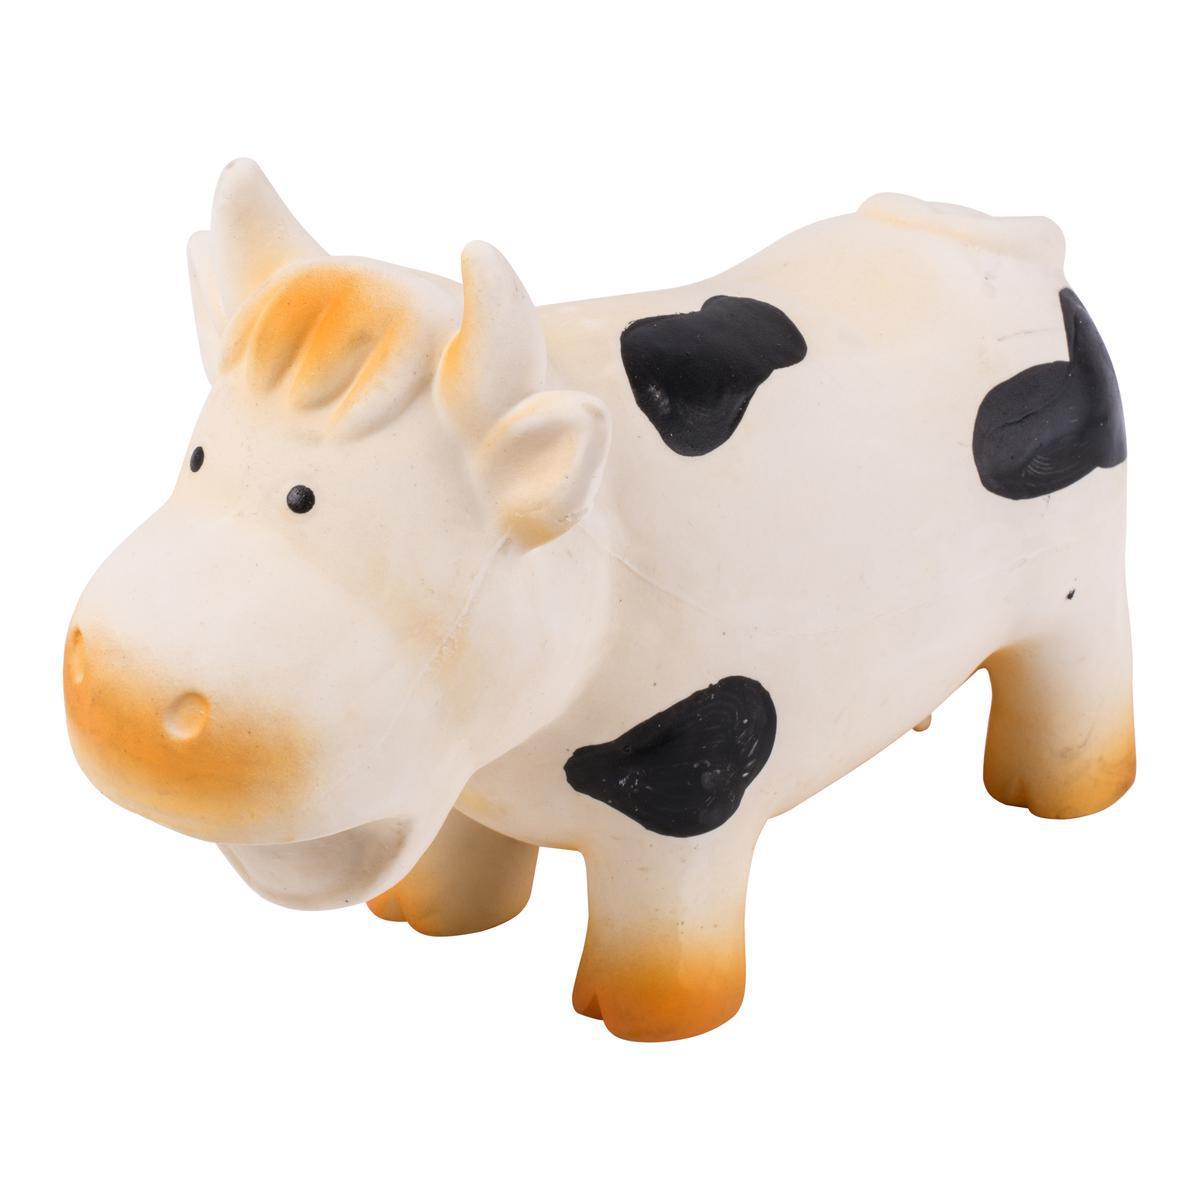 Jouet vache pour chien - Latex - 18 cm - Blanc, noir et orange